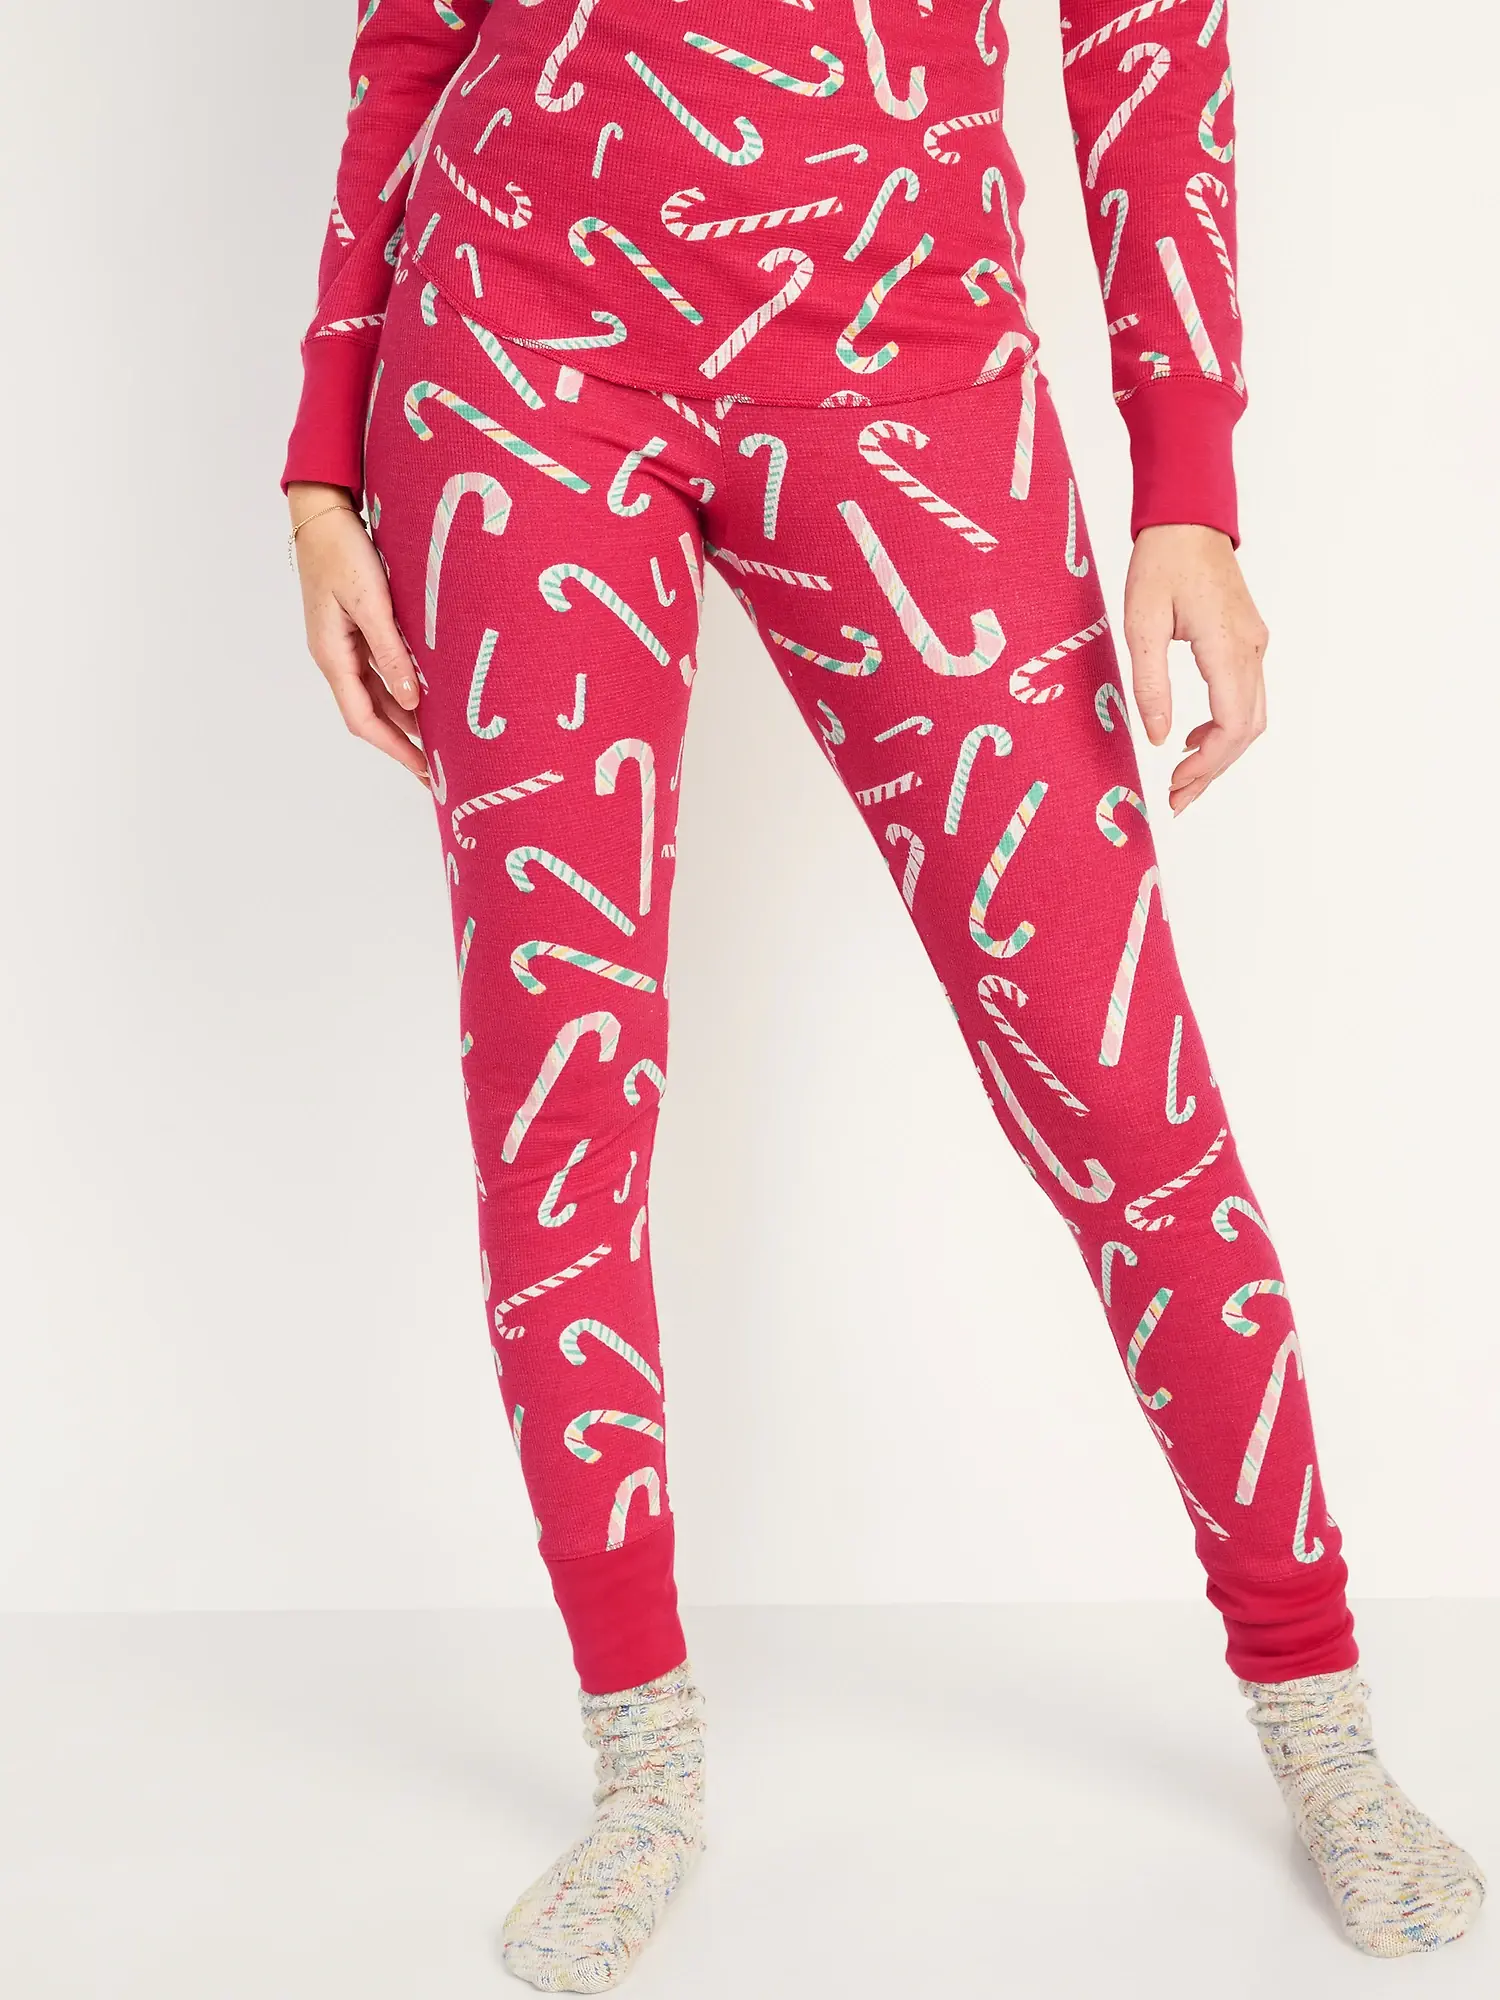 Old Navy Matching Printed Thermal-Knit Pajama Leggings for Women multi. 1